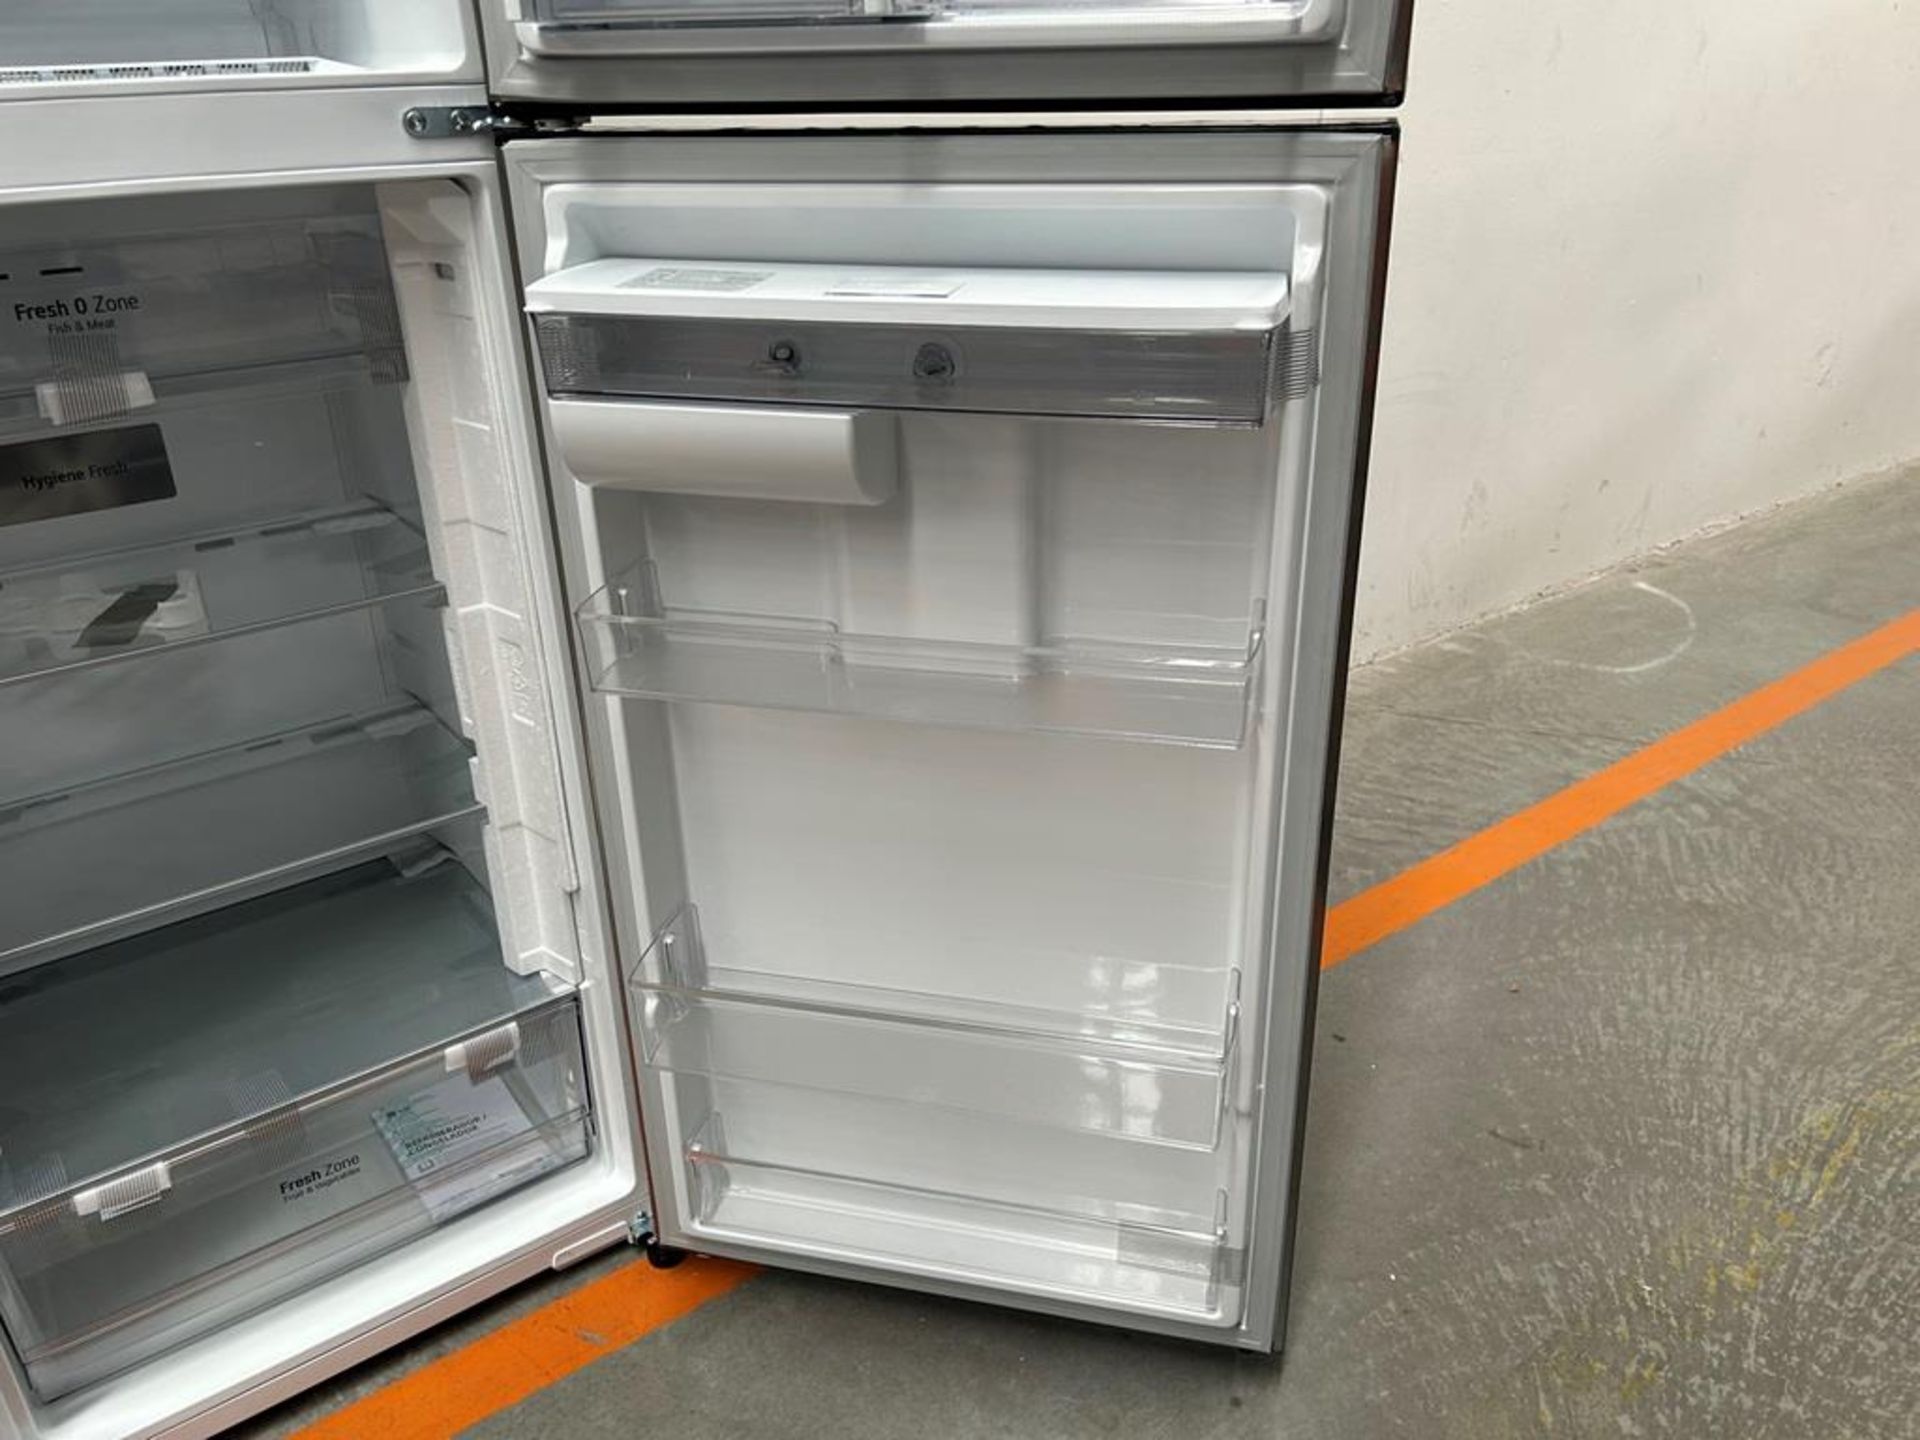 (NUEVO) Refrigerador con dispensador de agua Marca LG, Modelo VT40AWP, Serie 48304, Color GRIS - Image 7 of 11